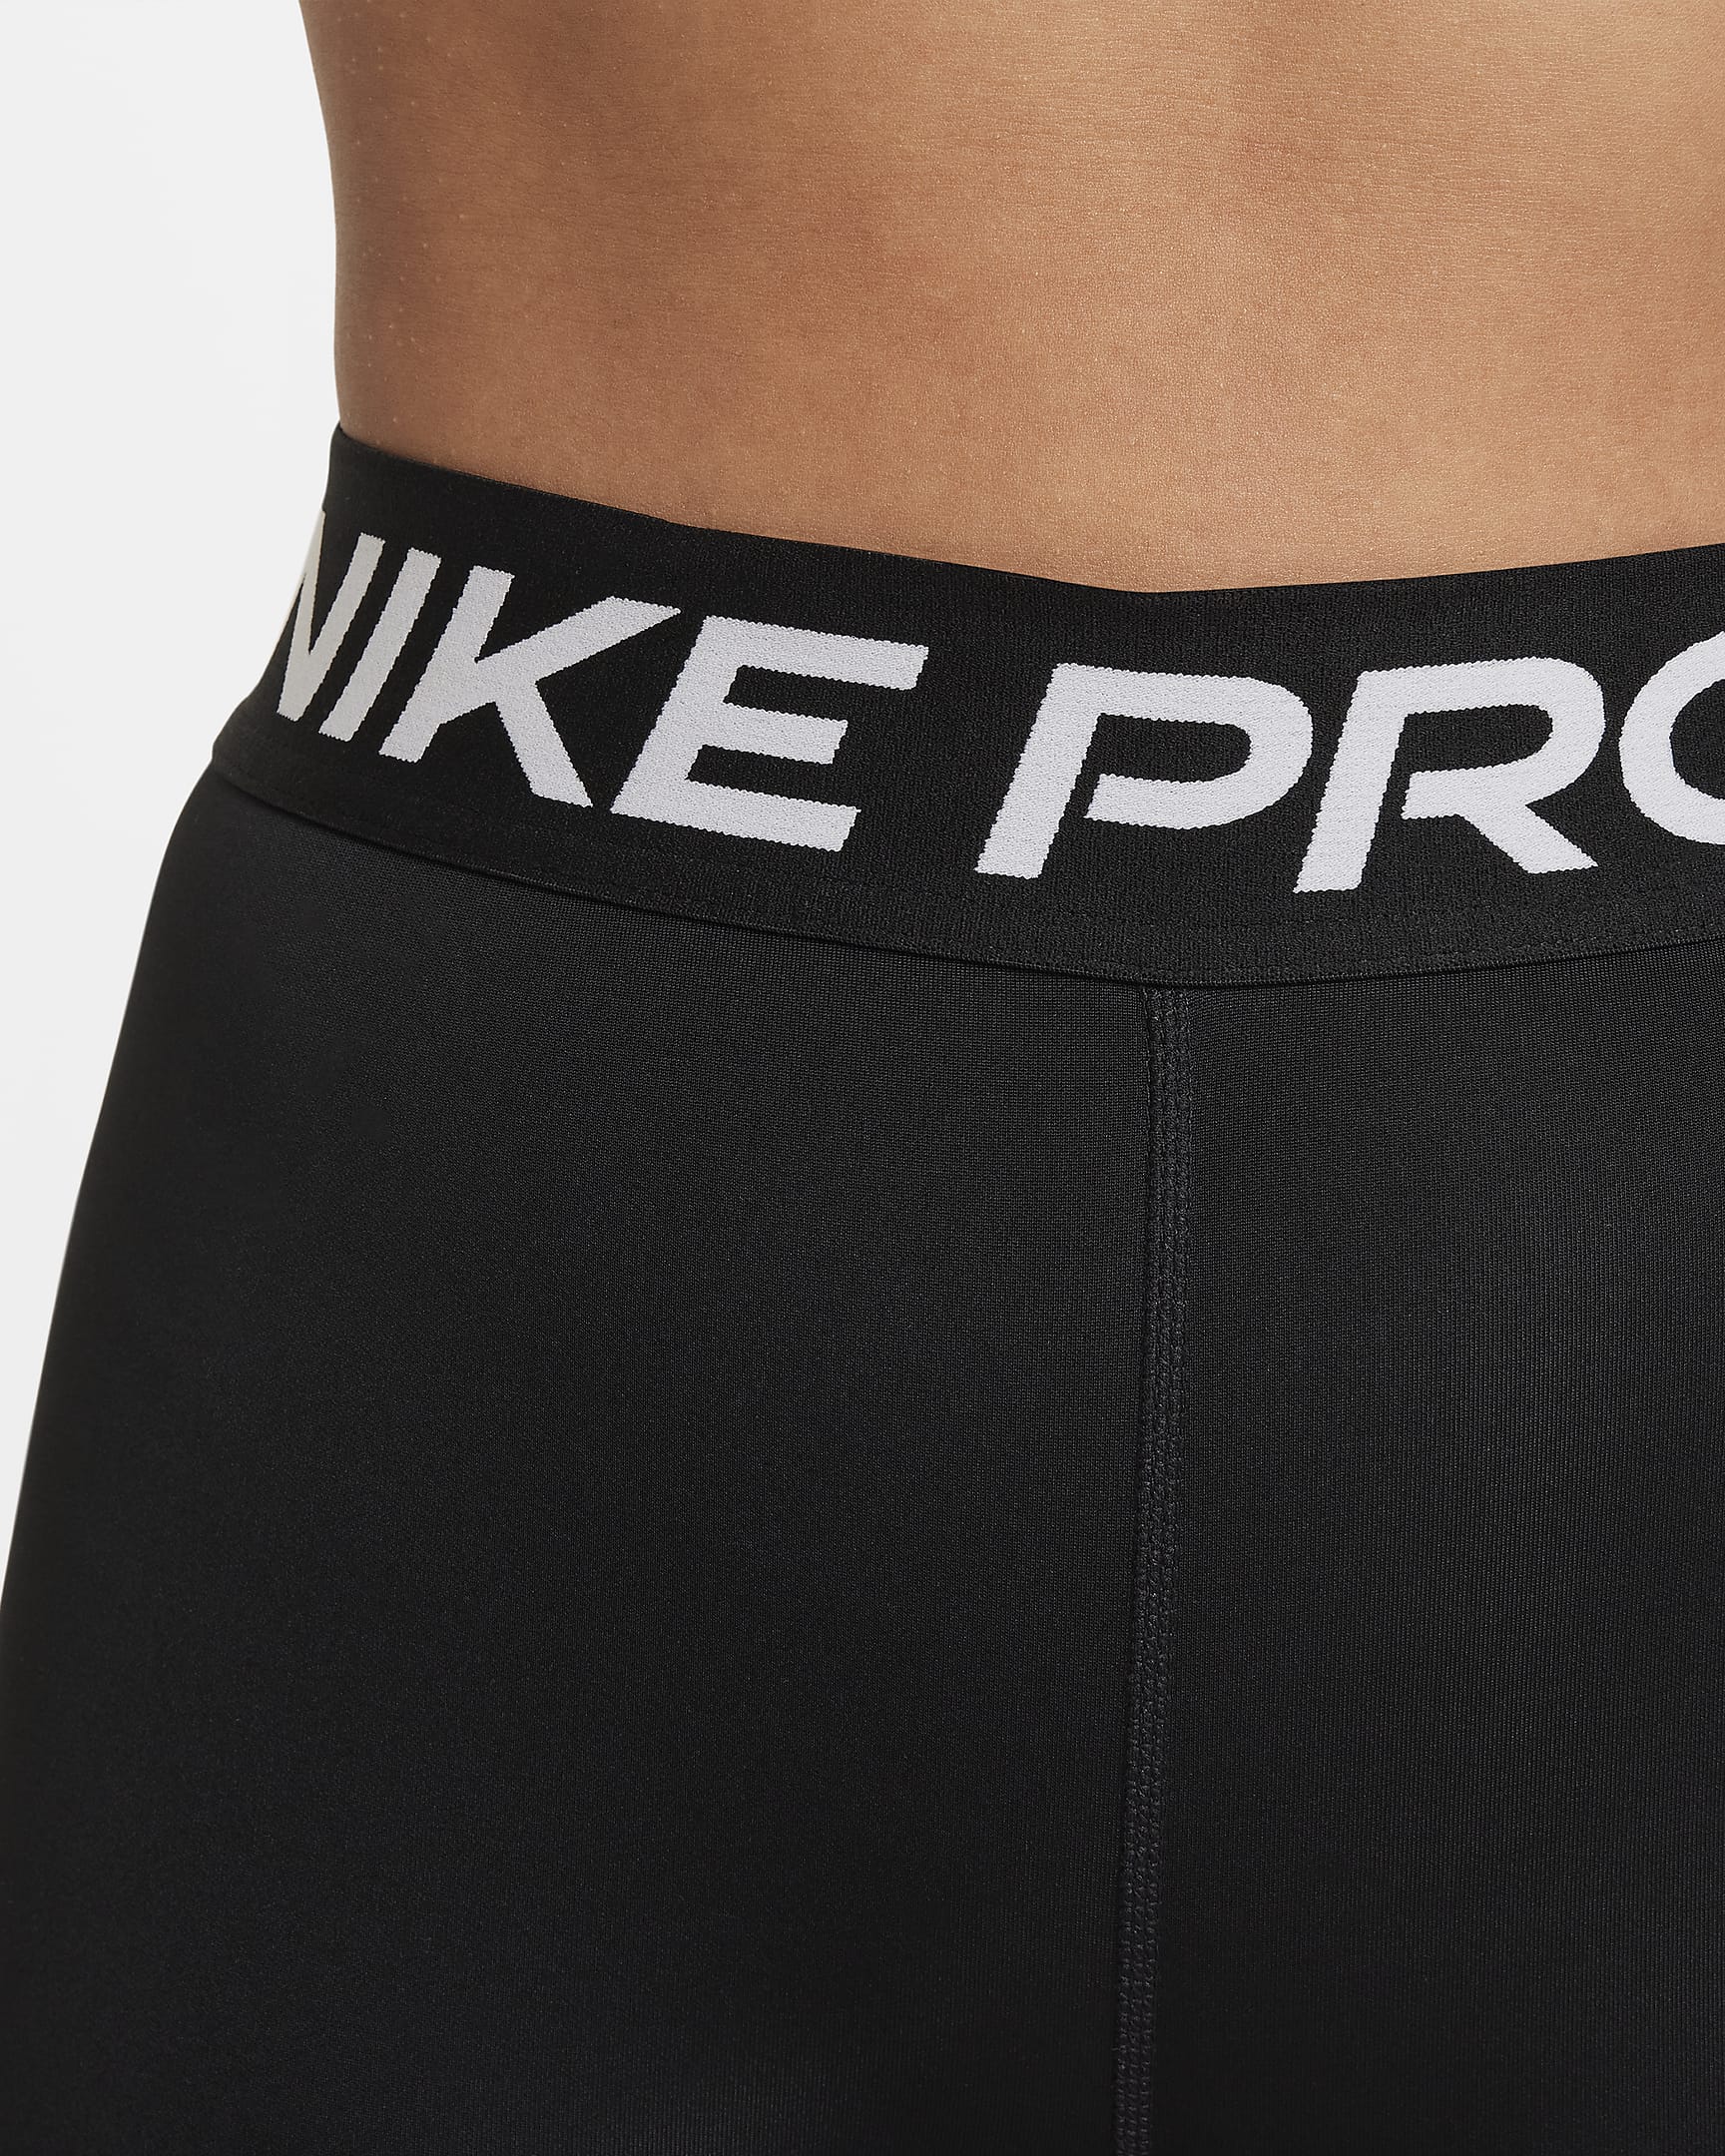 Nike Pro Dri-FIT Leggings für ältere Kinder (Mädchen) - Schwarz/Weiß